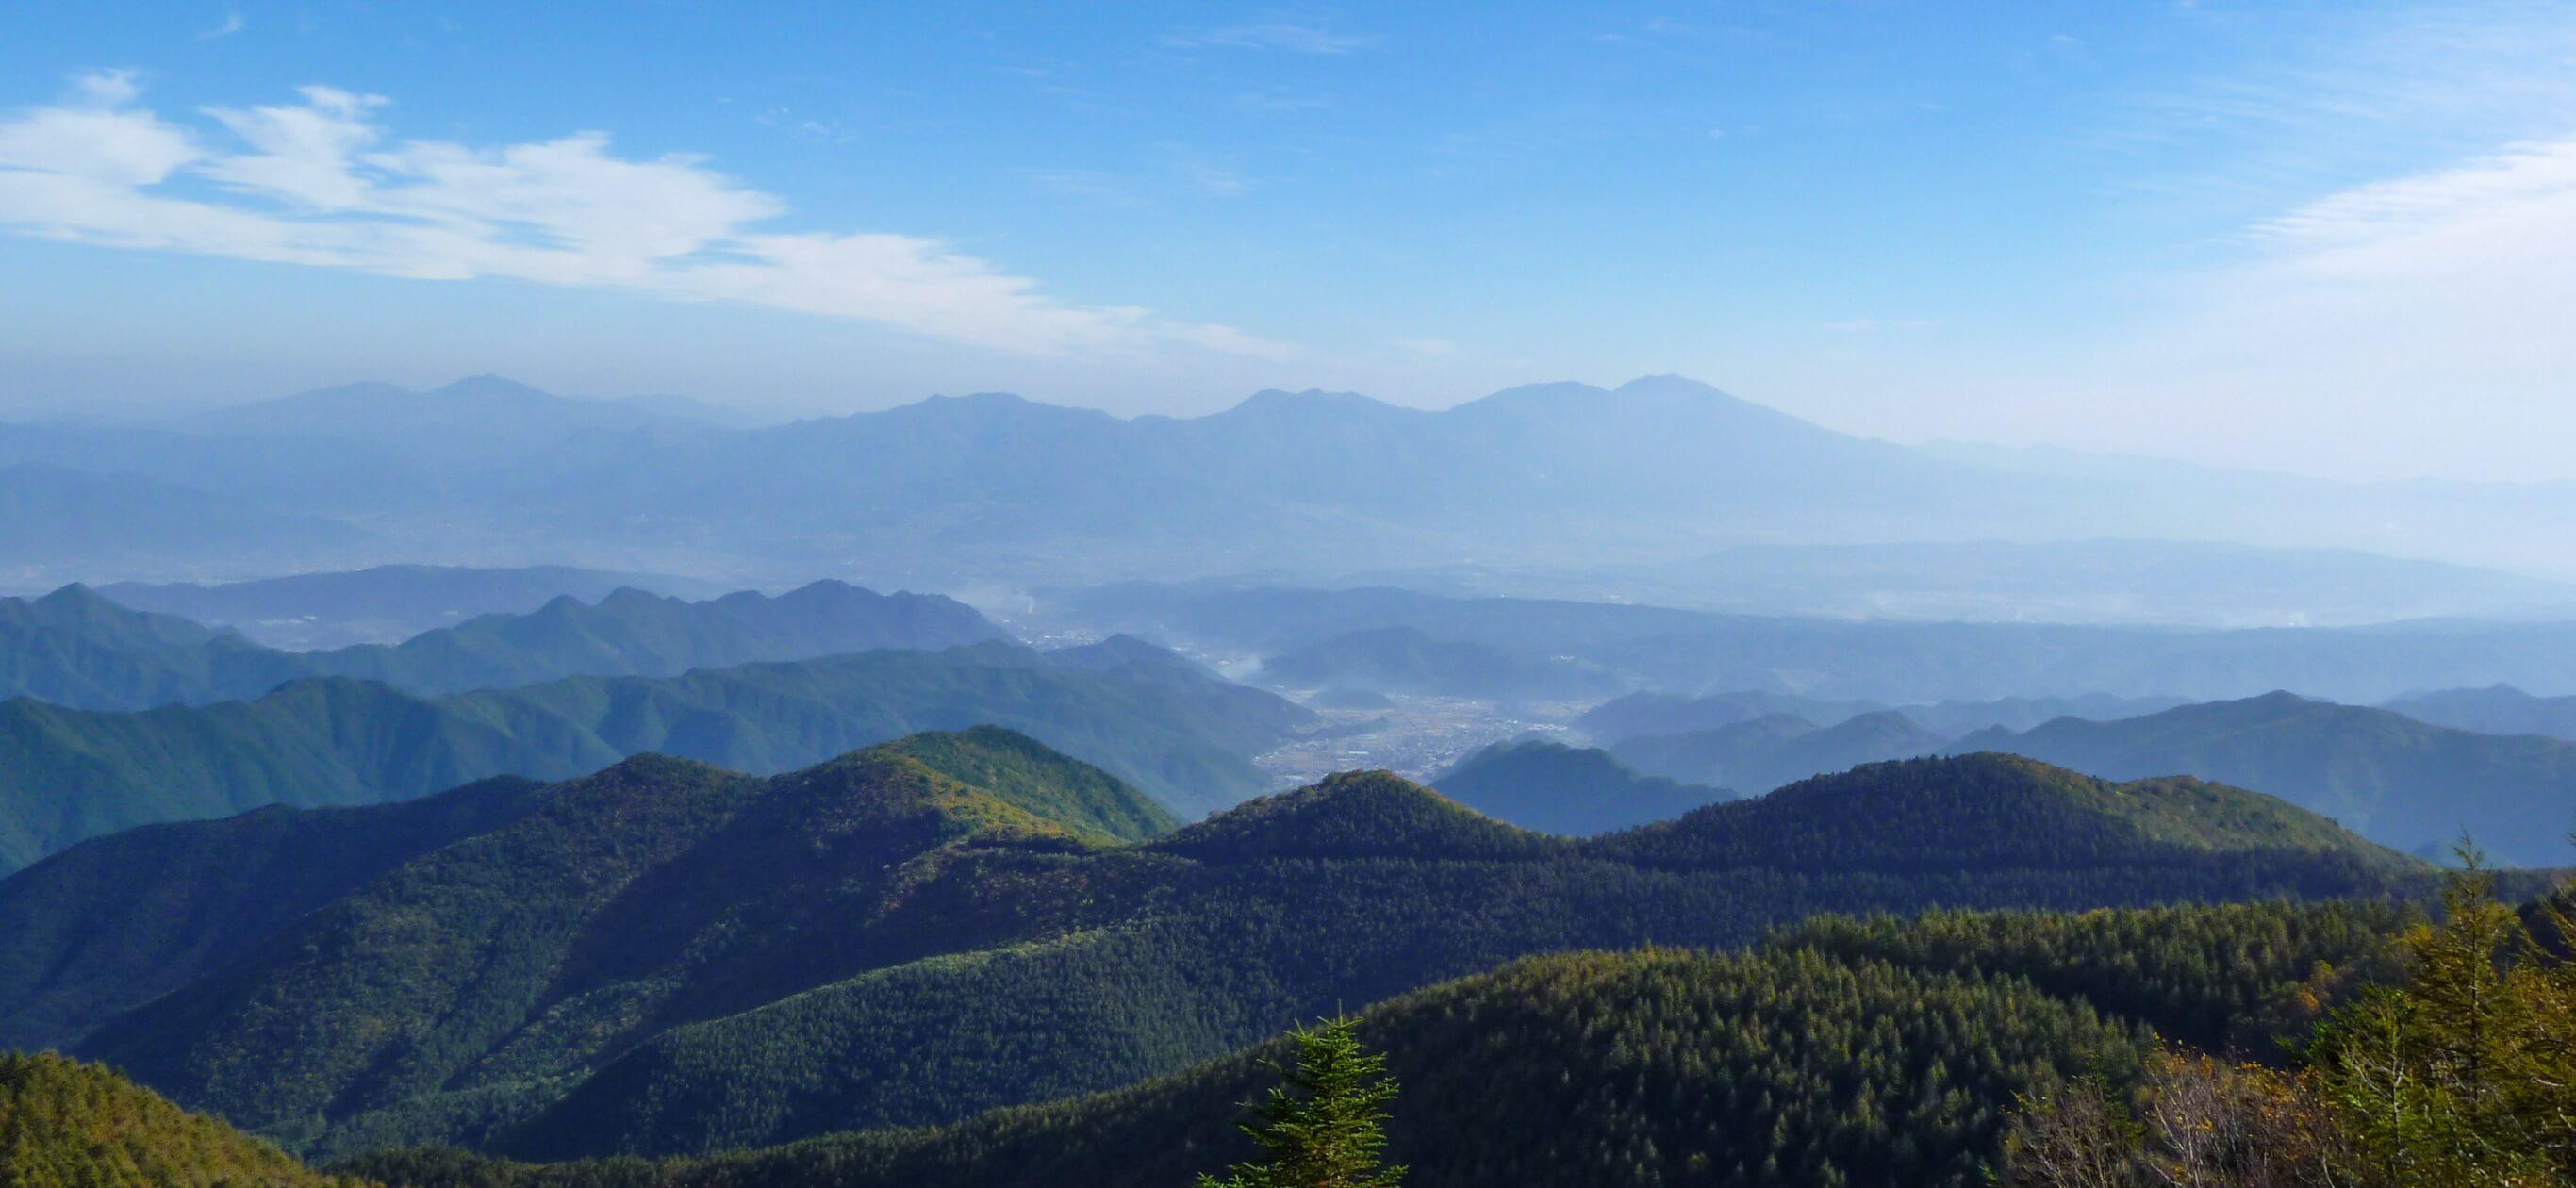 長野県の山々と青空の眺望